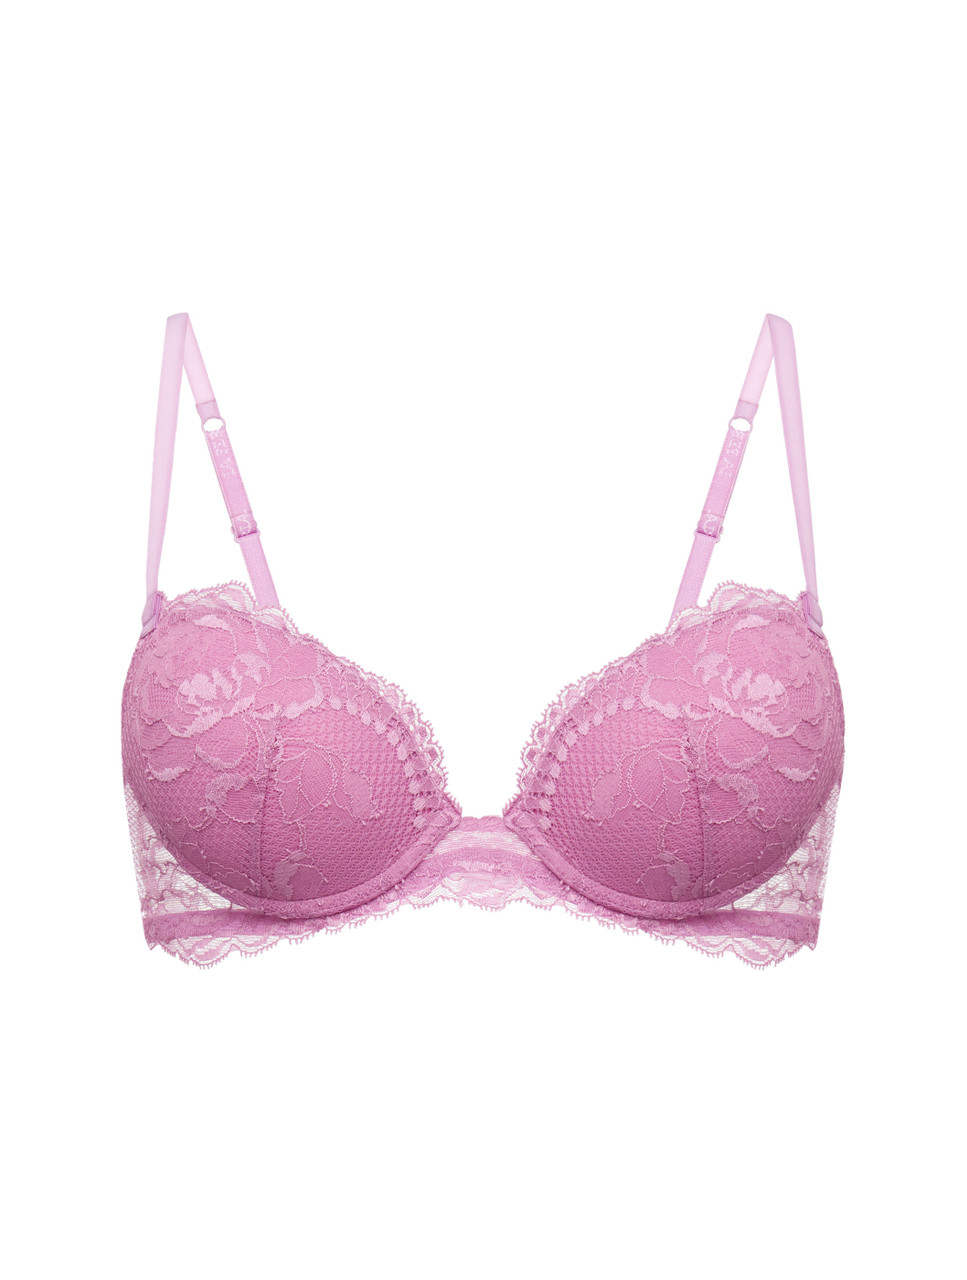 Size 36C/34D - La Perla Push Up Pink Lace Bra